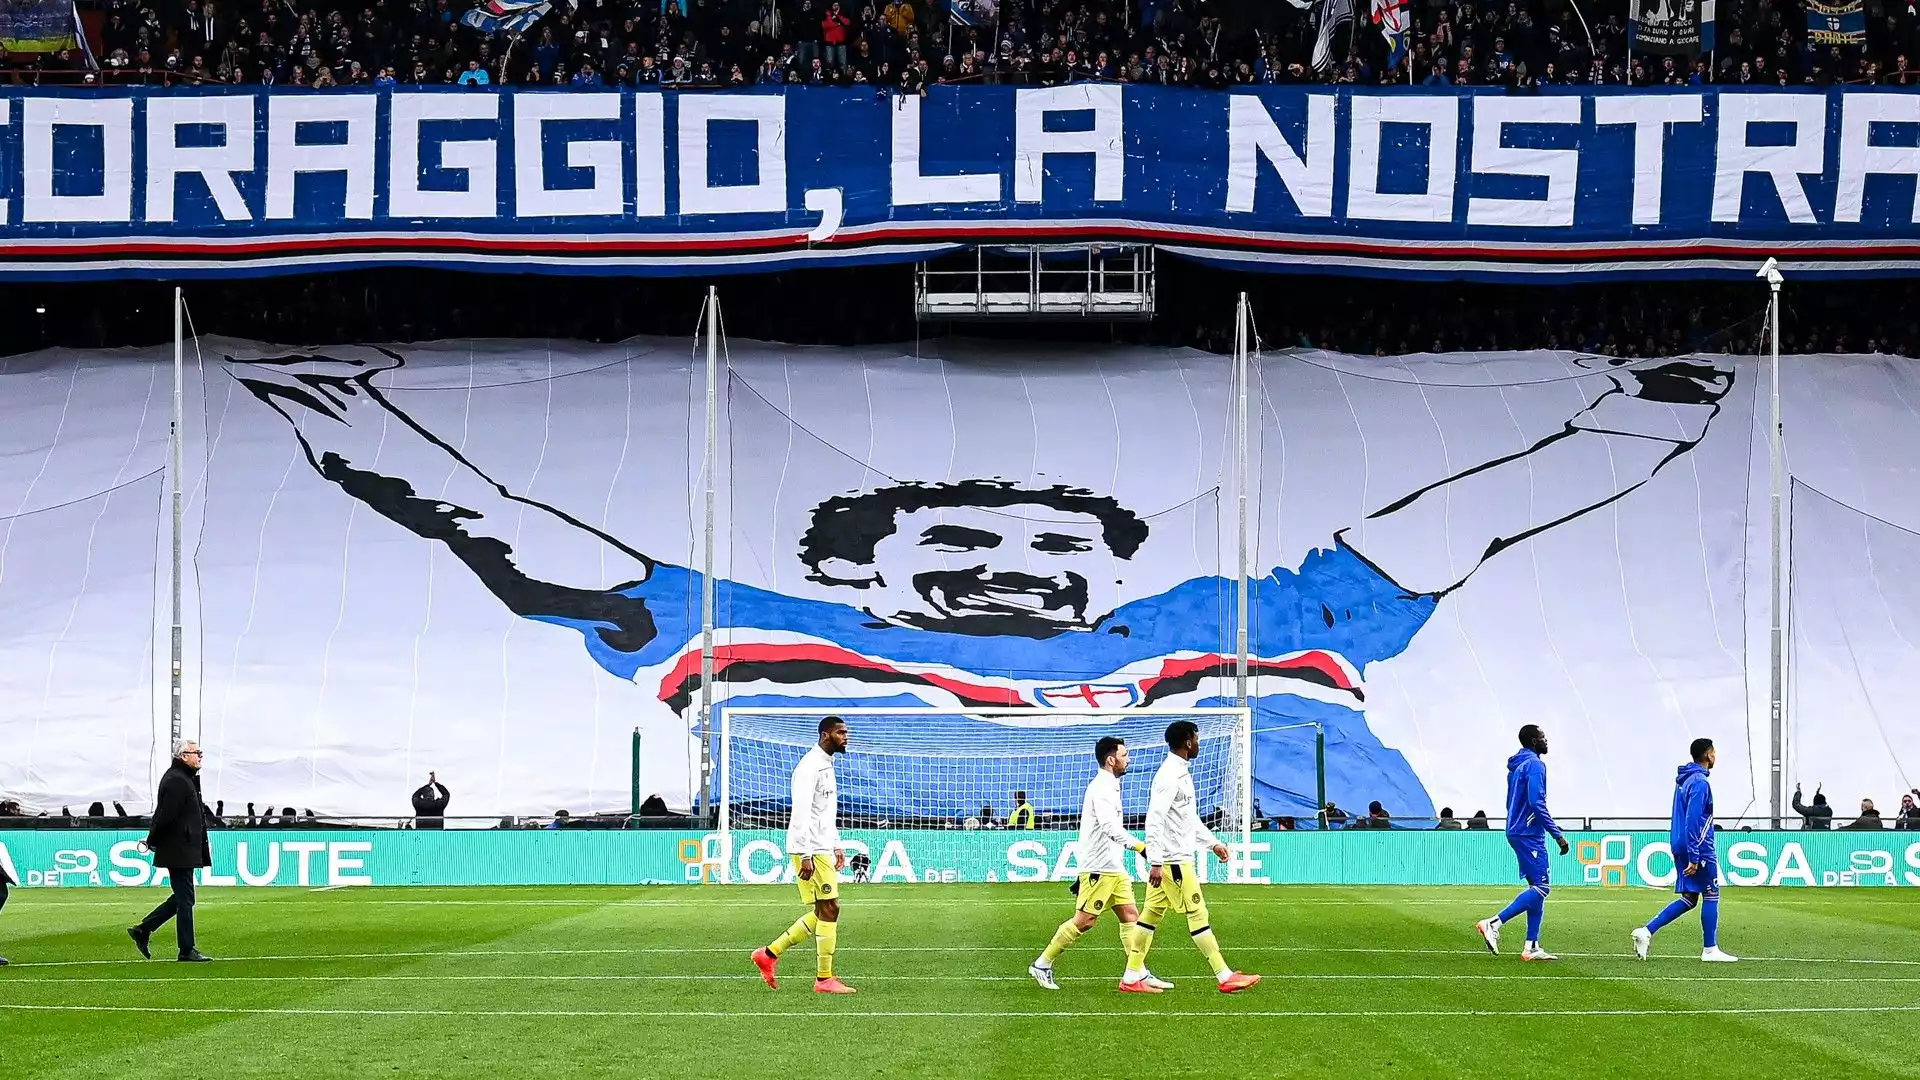 Sotto la scritta, un disegno enorme di Gianluca Vialli con la maglia della Sampdoria. Il campione ha giocato in Liguria tra il 1984 e il 1992